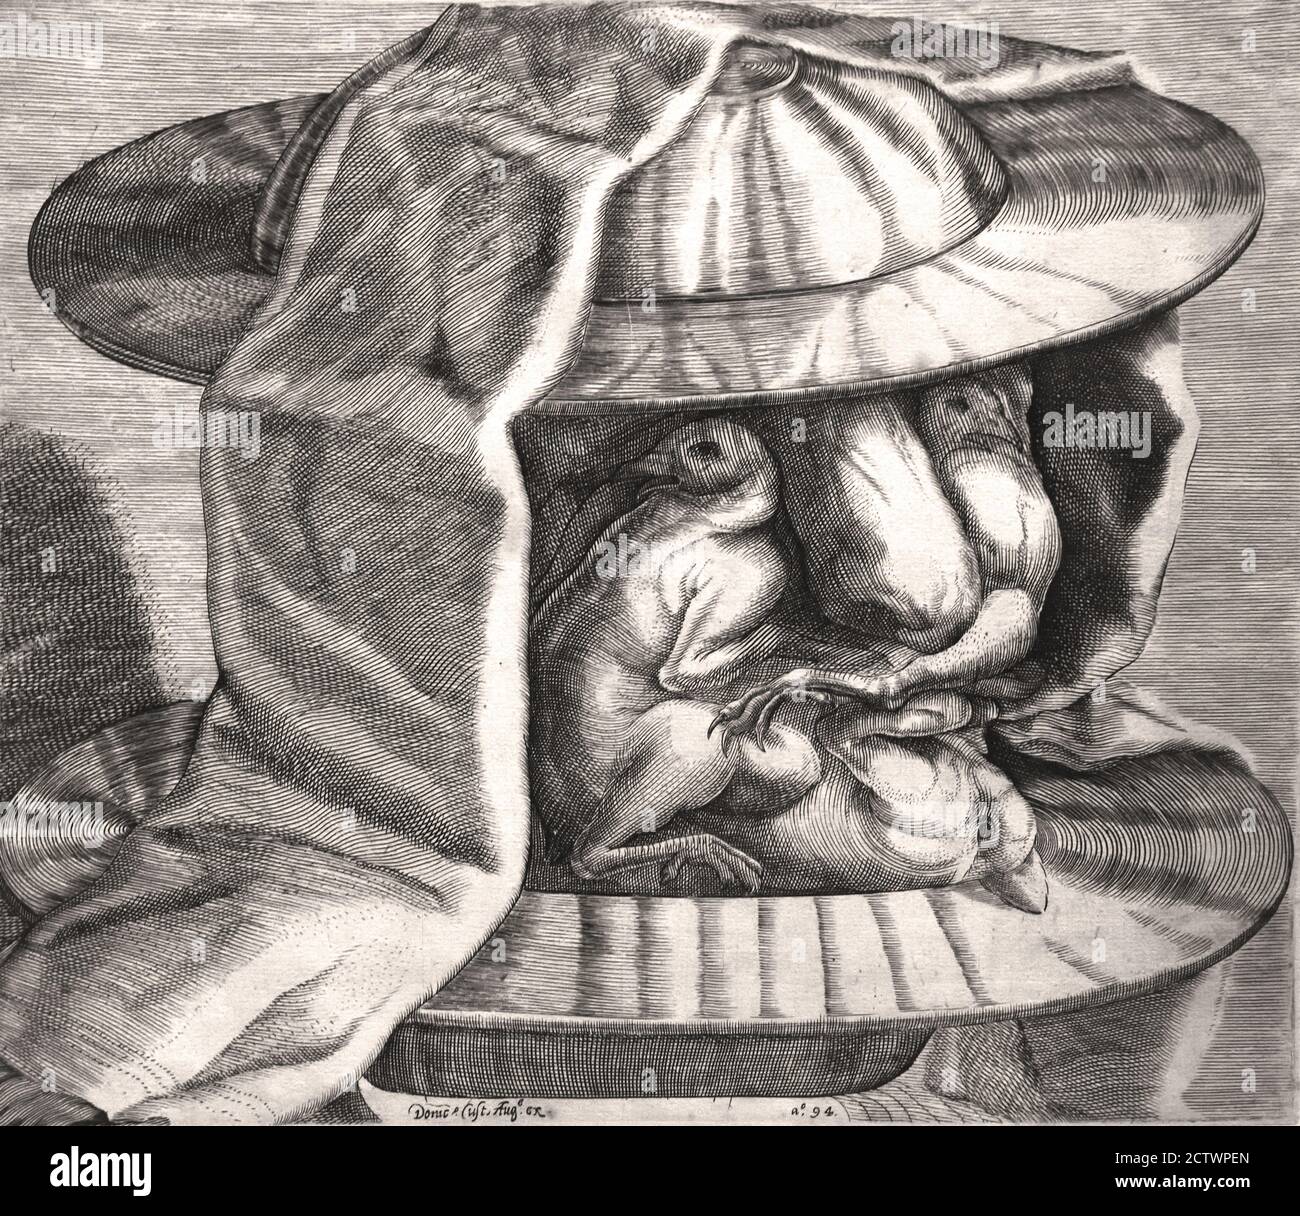 Une tête grotesque avec un casque dans le style d'Arcimboldo, par Dominicus Custos, 1594 pays-Bas, néerlandais, ( le visage se compose de volaille rôtie entre deux bols métalliques. Deux têtes de poulet servent d'yeux, tandis qu'une jambe tendue suggère une moustache. La composition rappelle fortement les peintures de Giuseppe Arcimboldo (c. 1526-1593) ) Banque D'Images